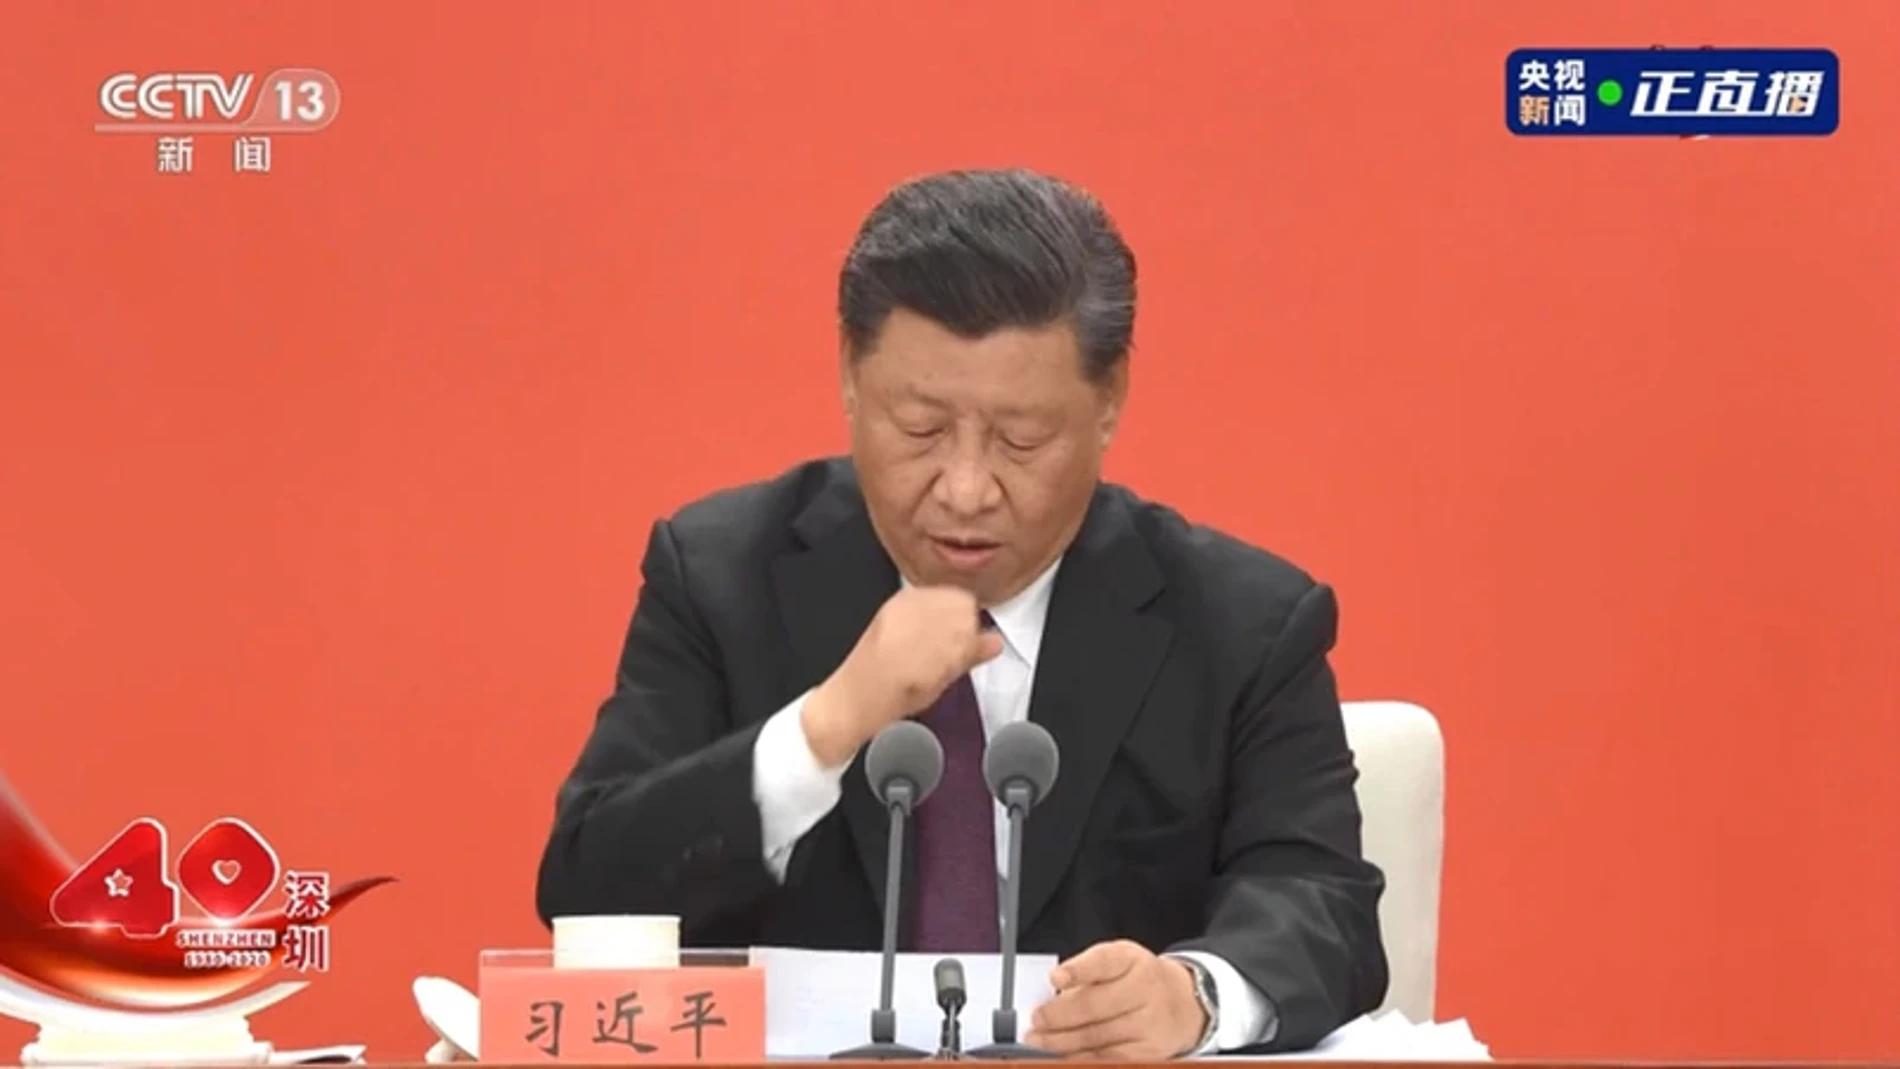 El discurso de Xi Jinping se vio interrumpido en repetidas ocasiones por sus ataques de tos